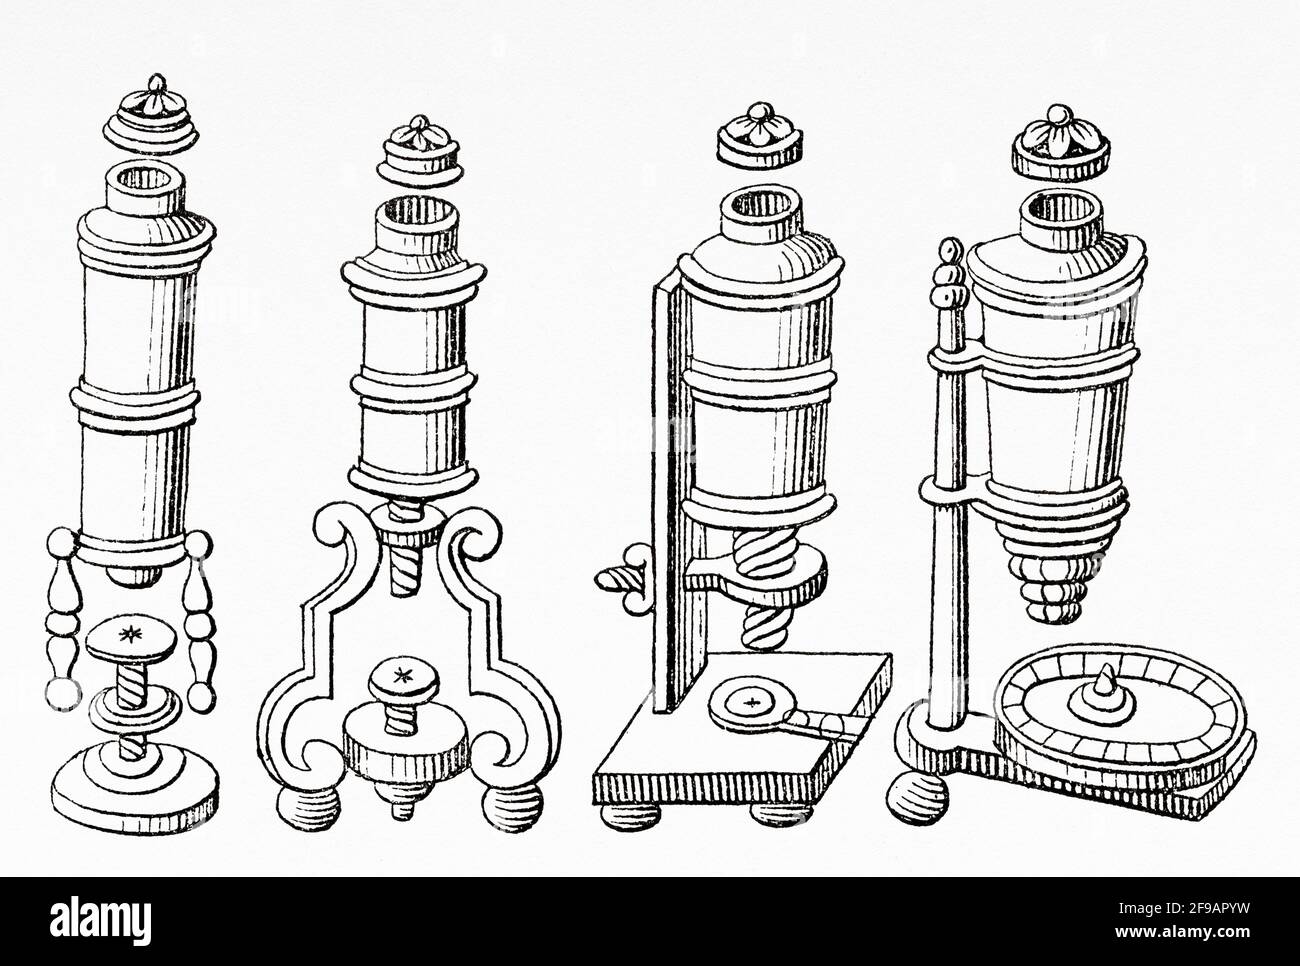 Microscope Monconys. Balthazar de Monconys (1611-1665) Français voyageur, diplomate, physicien et magistrat. Ancienne illustration gravée du XIXe siècle de la nature 1889 Banque D'Images